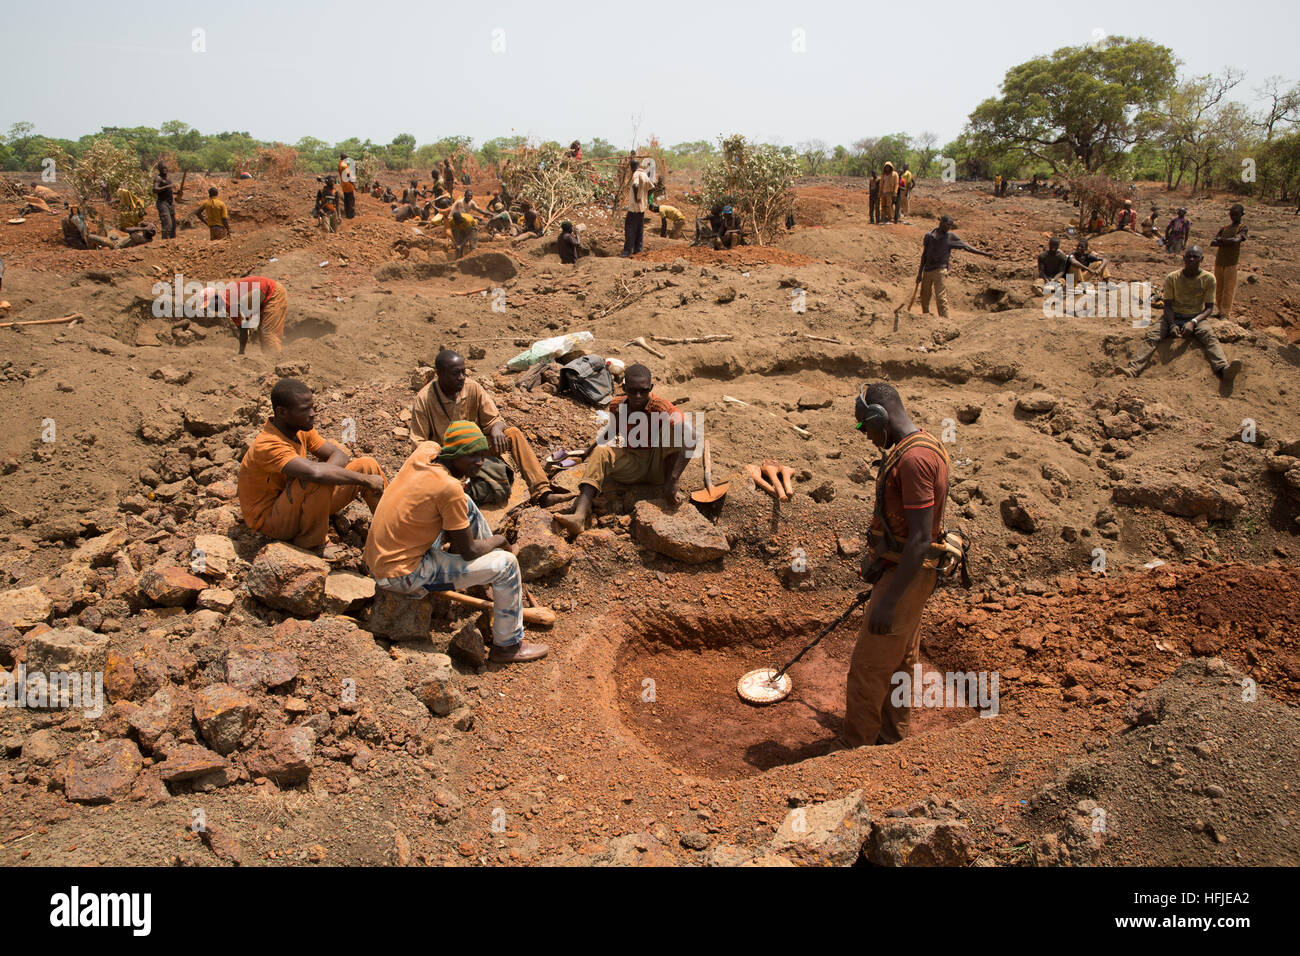 Mina de Oro Sanana, Guinea, el 2 de mayo de 2015; mineros cavan mientras otros pagan a un hombre con un detector de metales para verificar su tierra. Foto de stock